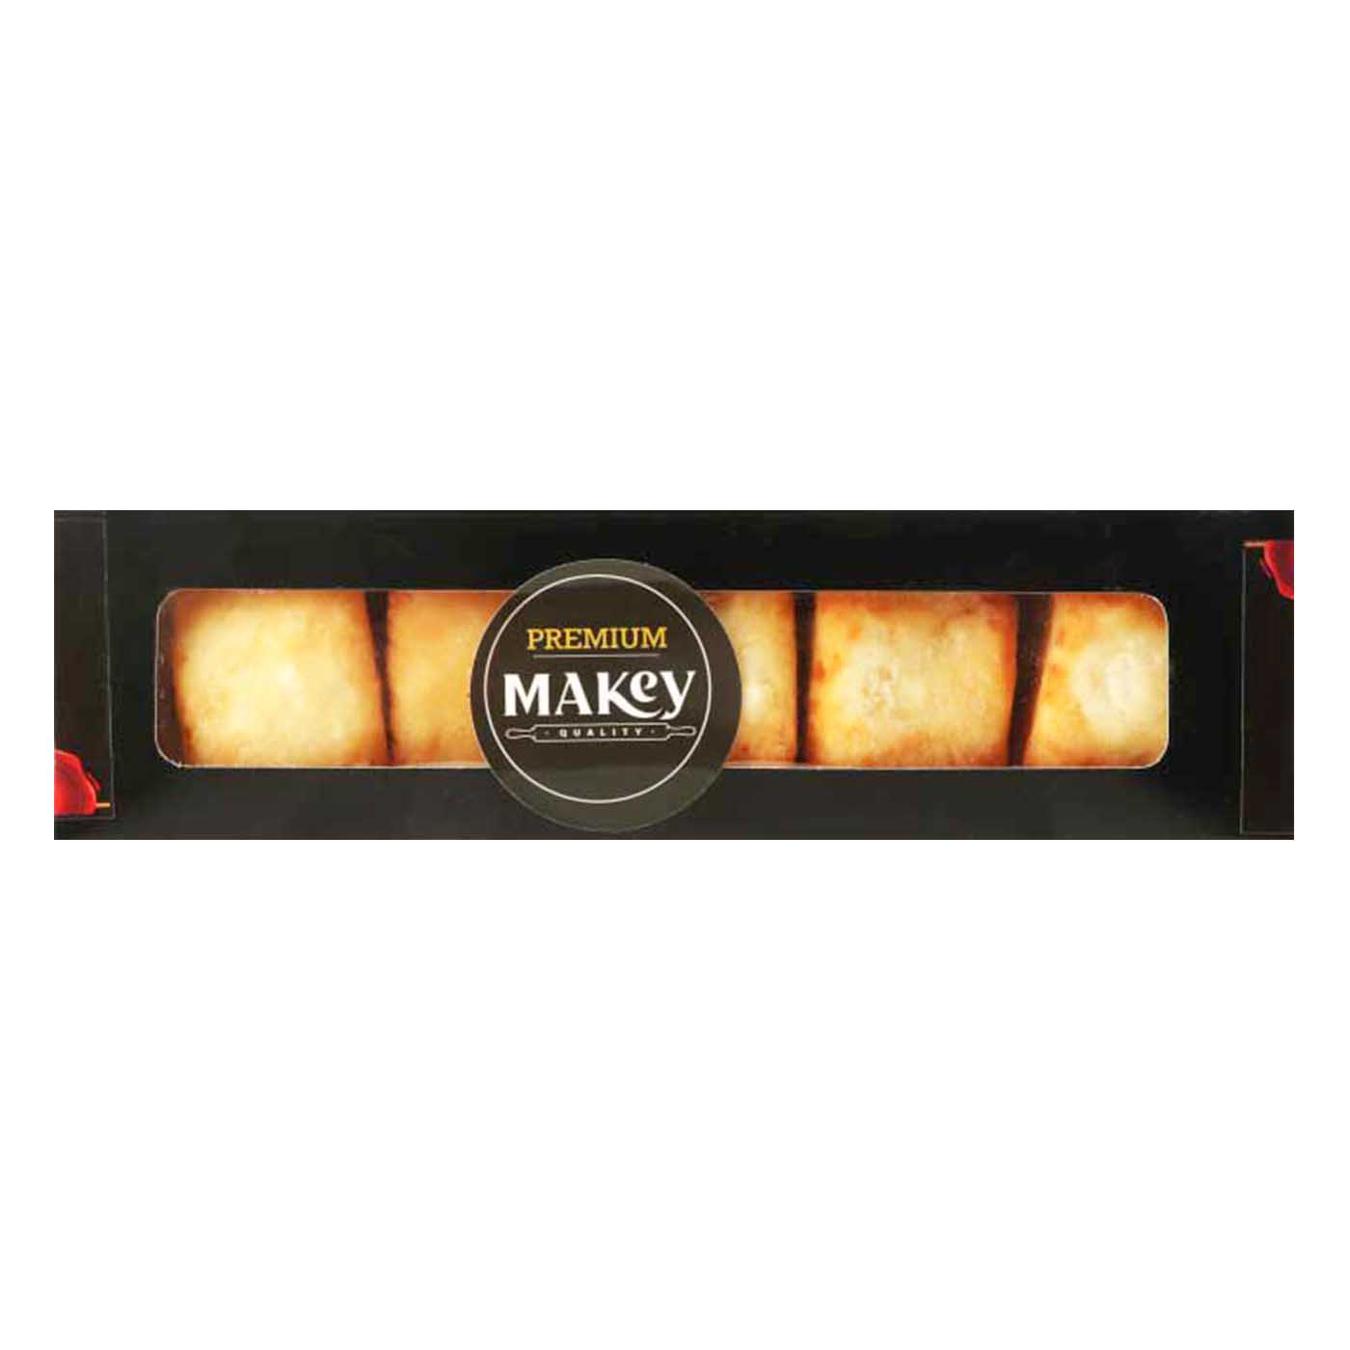 Mackay cheeses fried Premium 300g